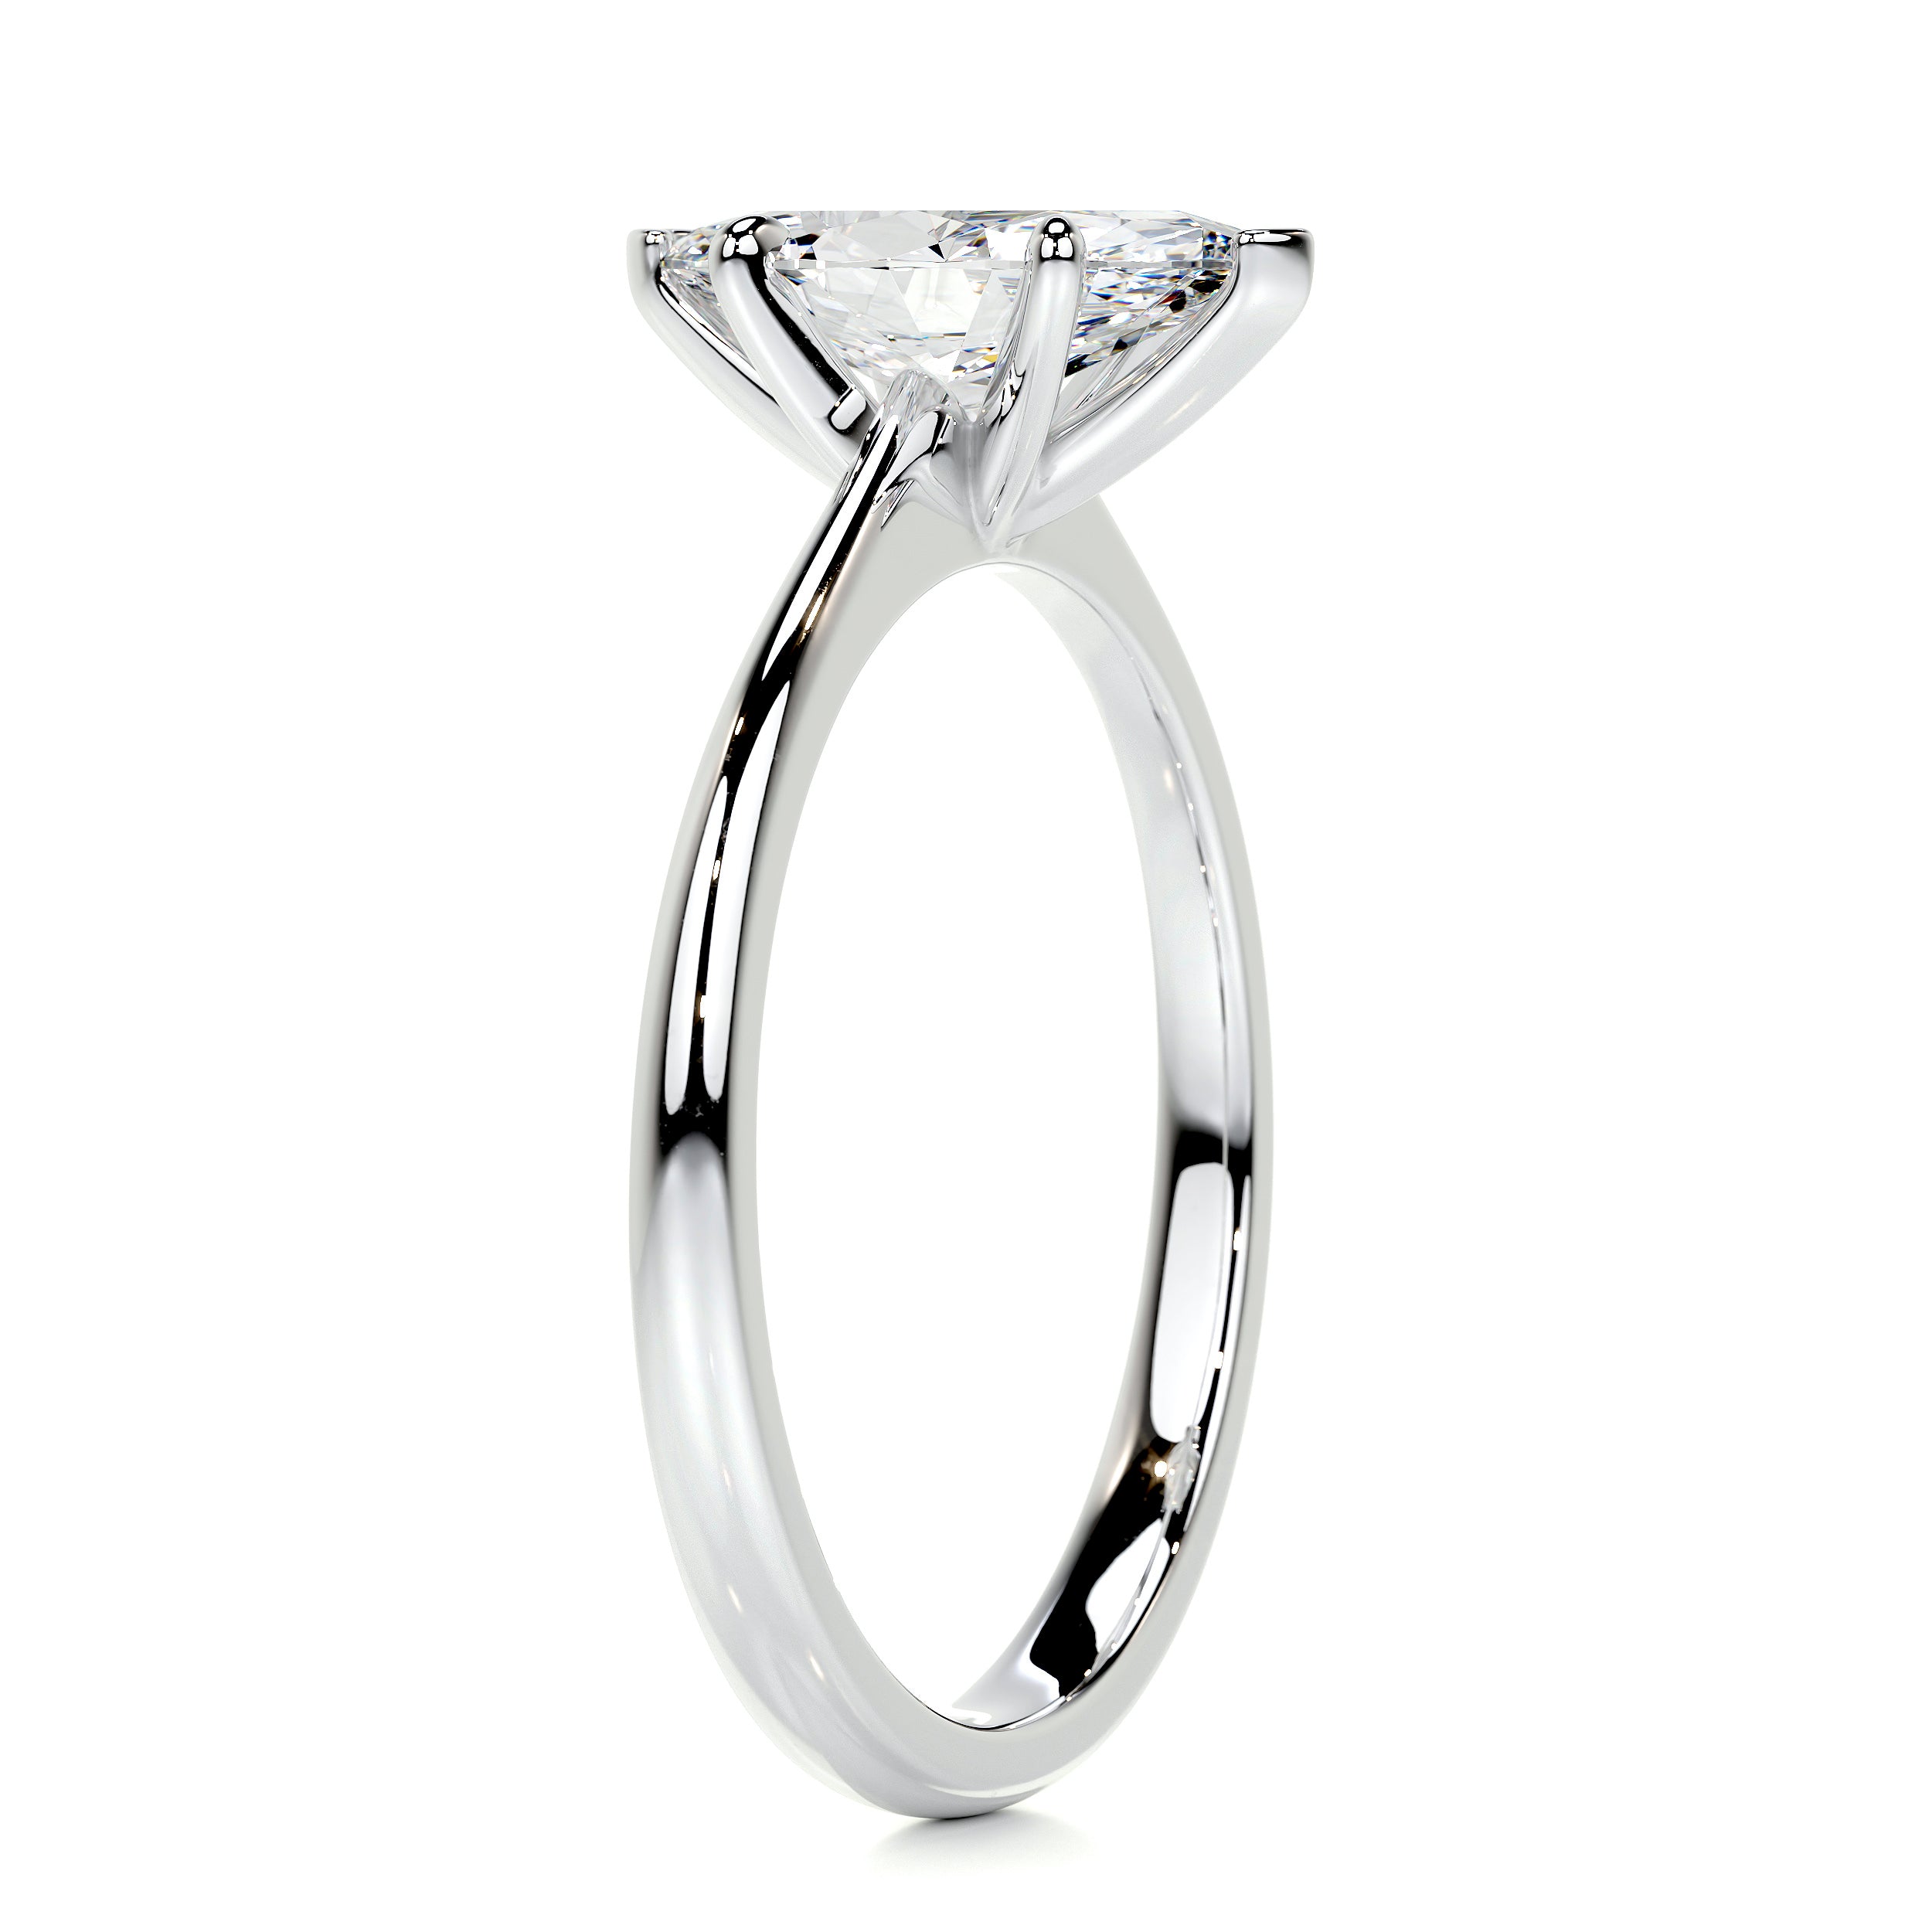 Samantha Diamond Engagement Ring   (1 Carat) -14K White Gold